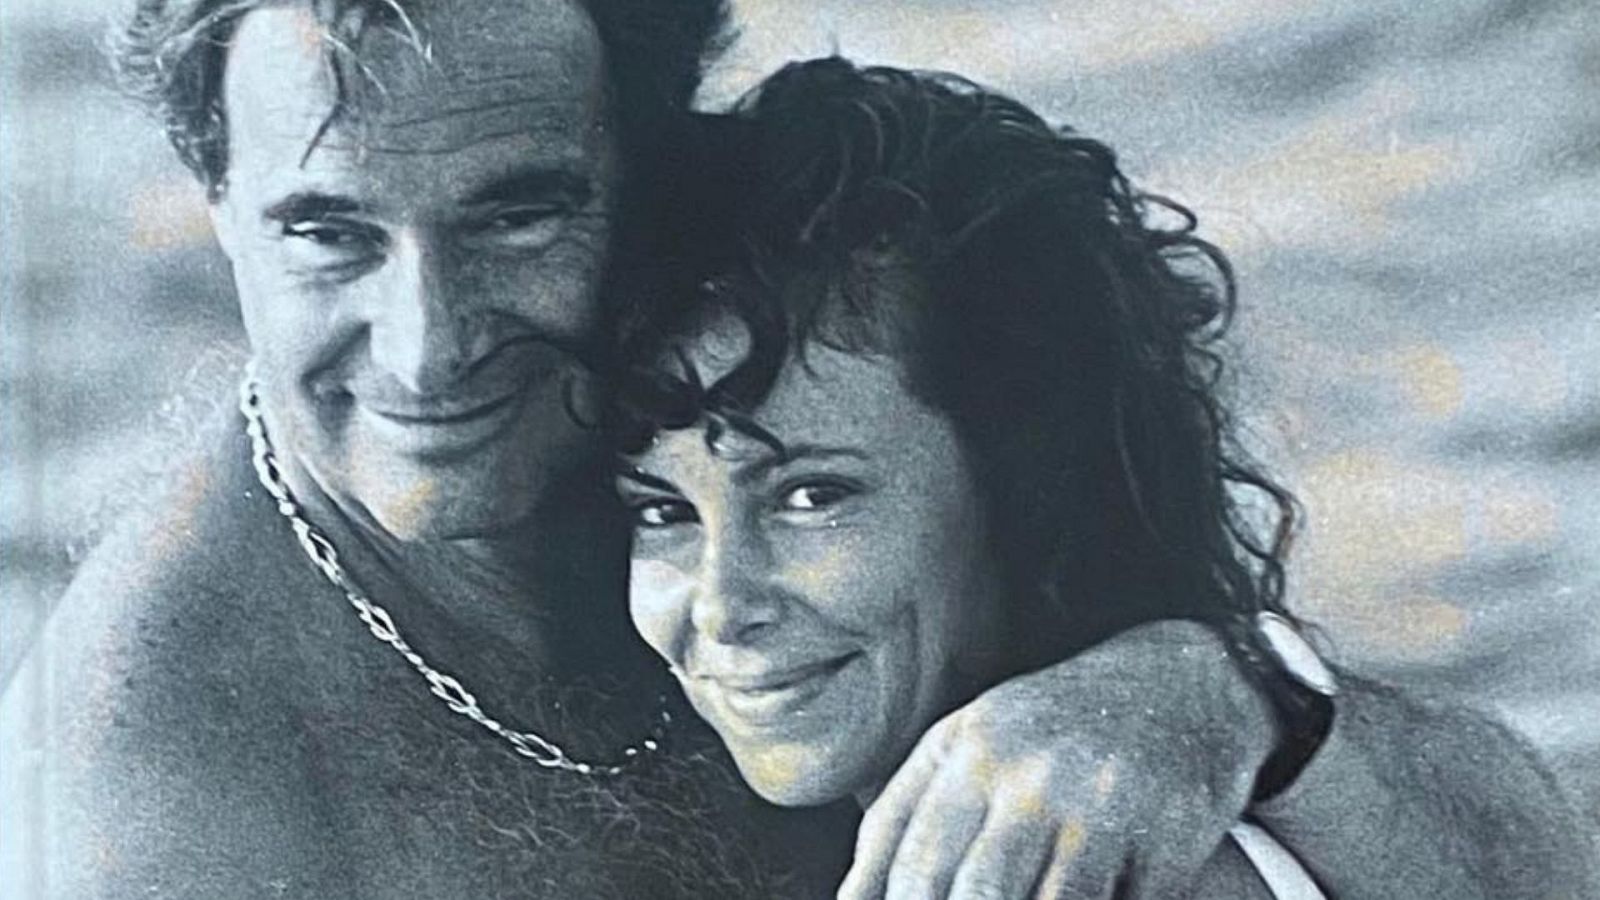 Ana Obregón y su padre, Antonio García, abrazados en la playa en una fotografía antigua en blanco y negro